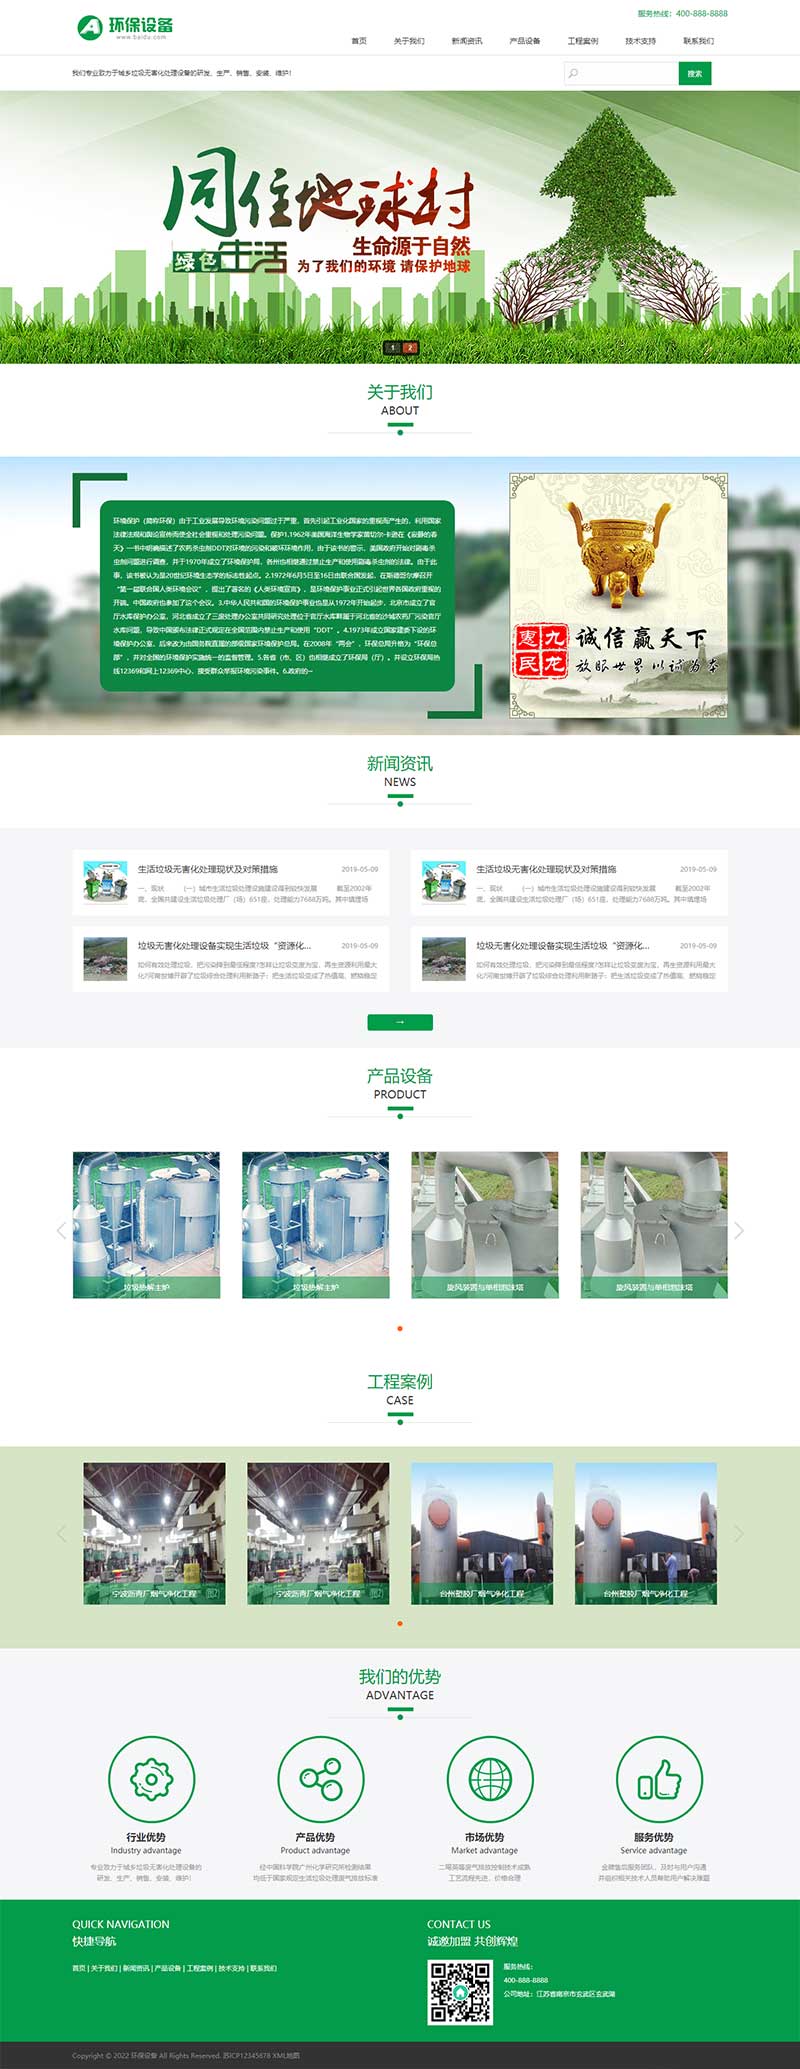 (PC+手机版)绿色环保能源回收利用设备企业网站源码电脑端展示图片